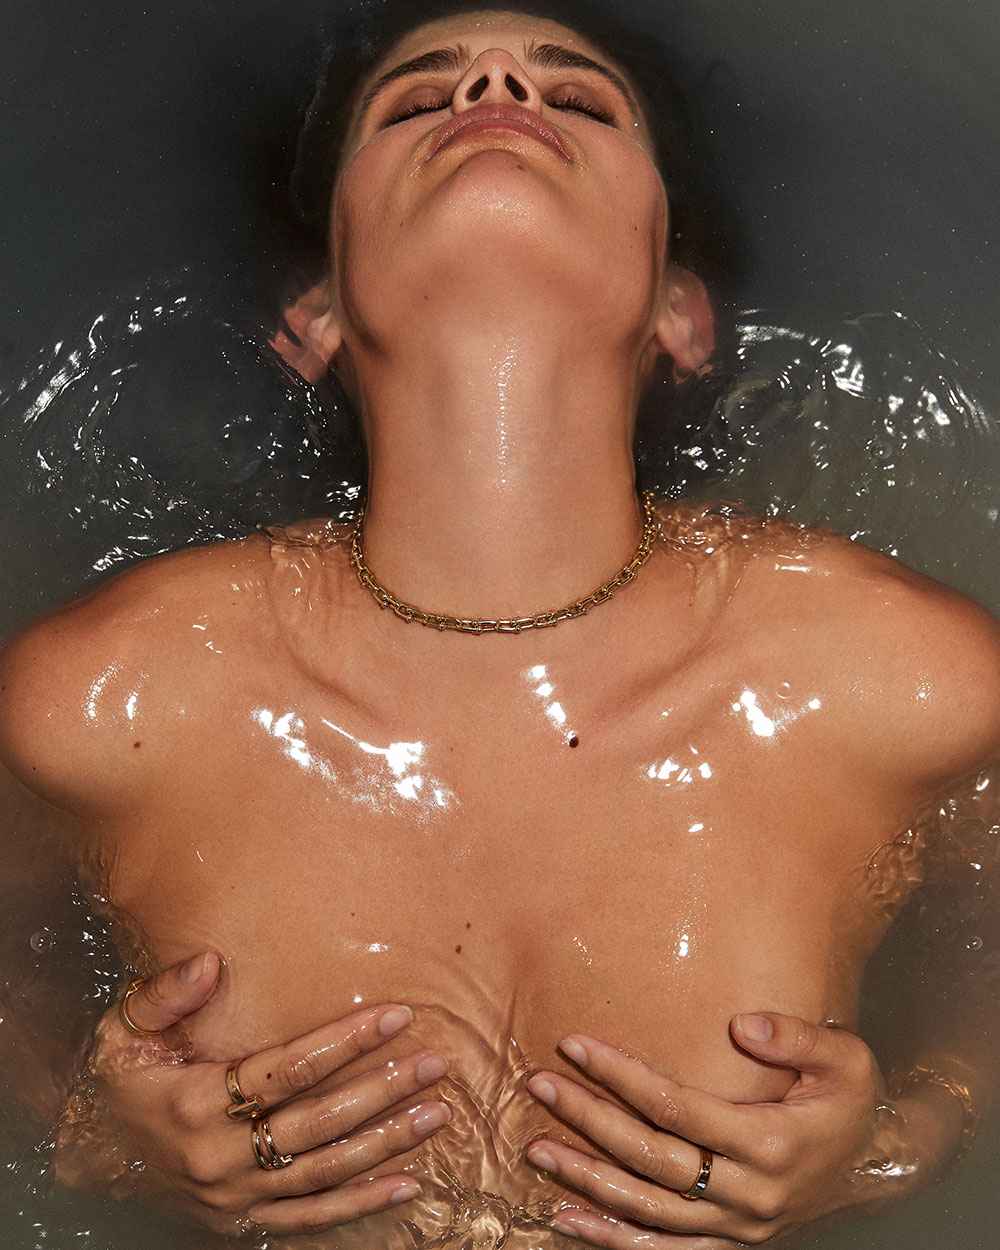 Sara Sampaio Nude in Bath Tub